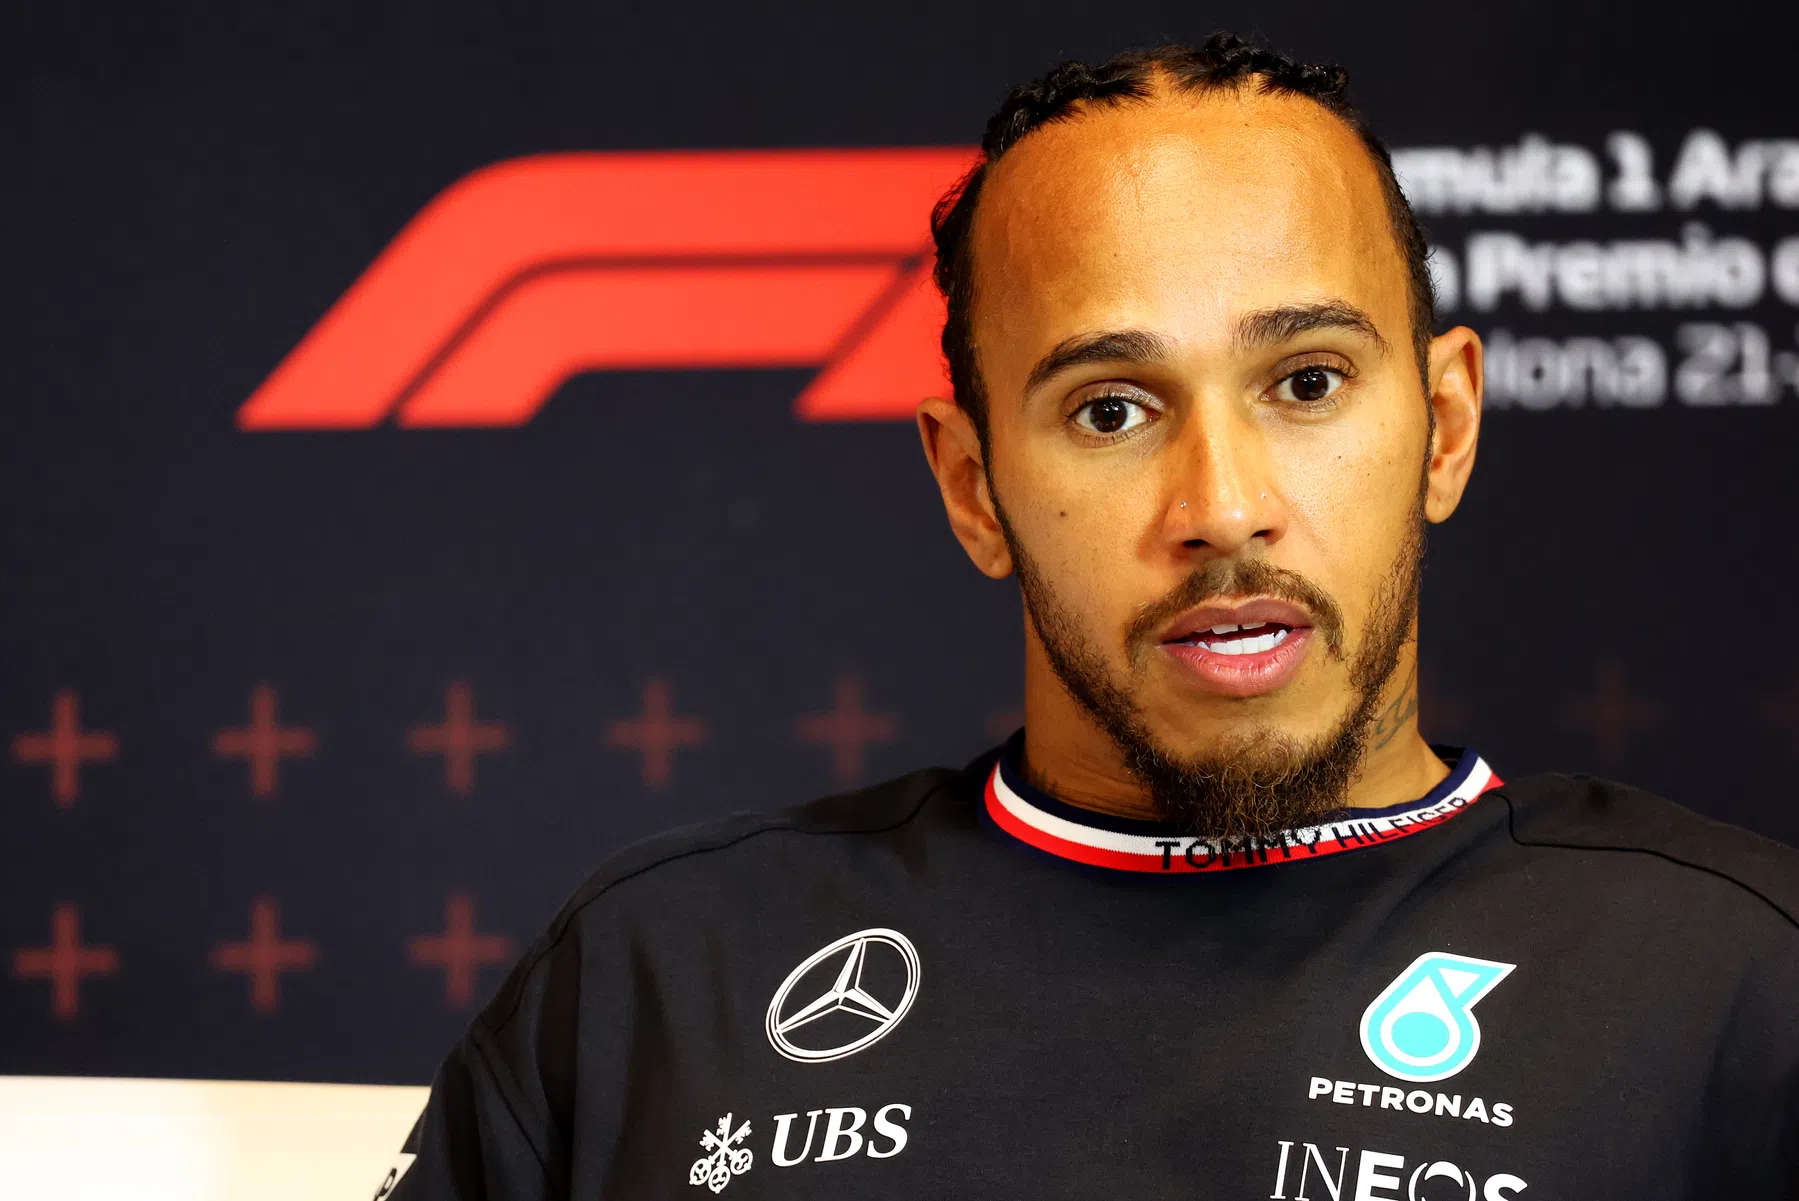 Die Stewards verkünden ihr Urteil über Lewis Hamilton und Mercedes nach dem Zwischenfall in Q3